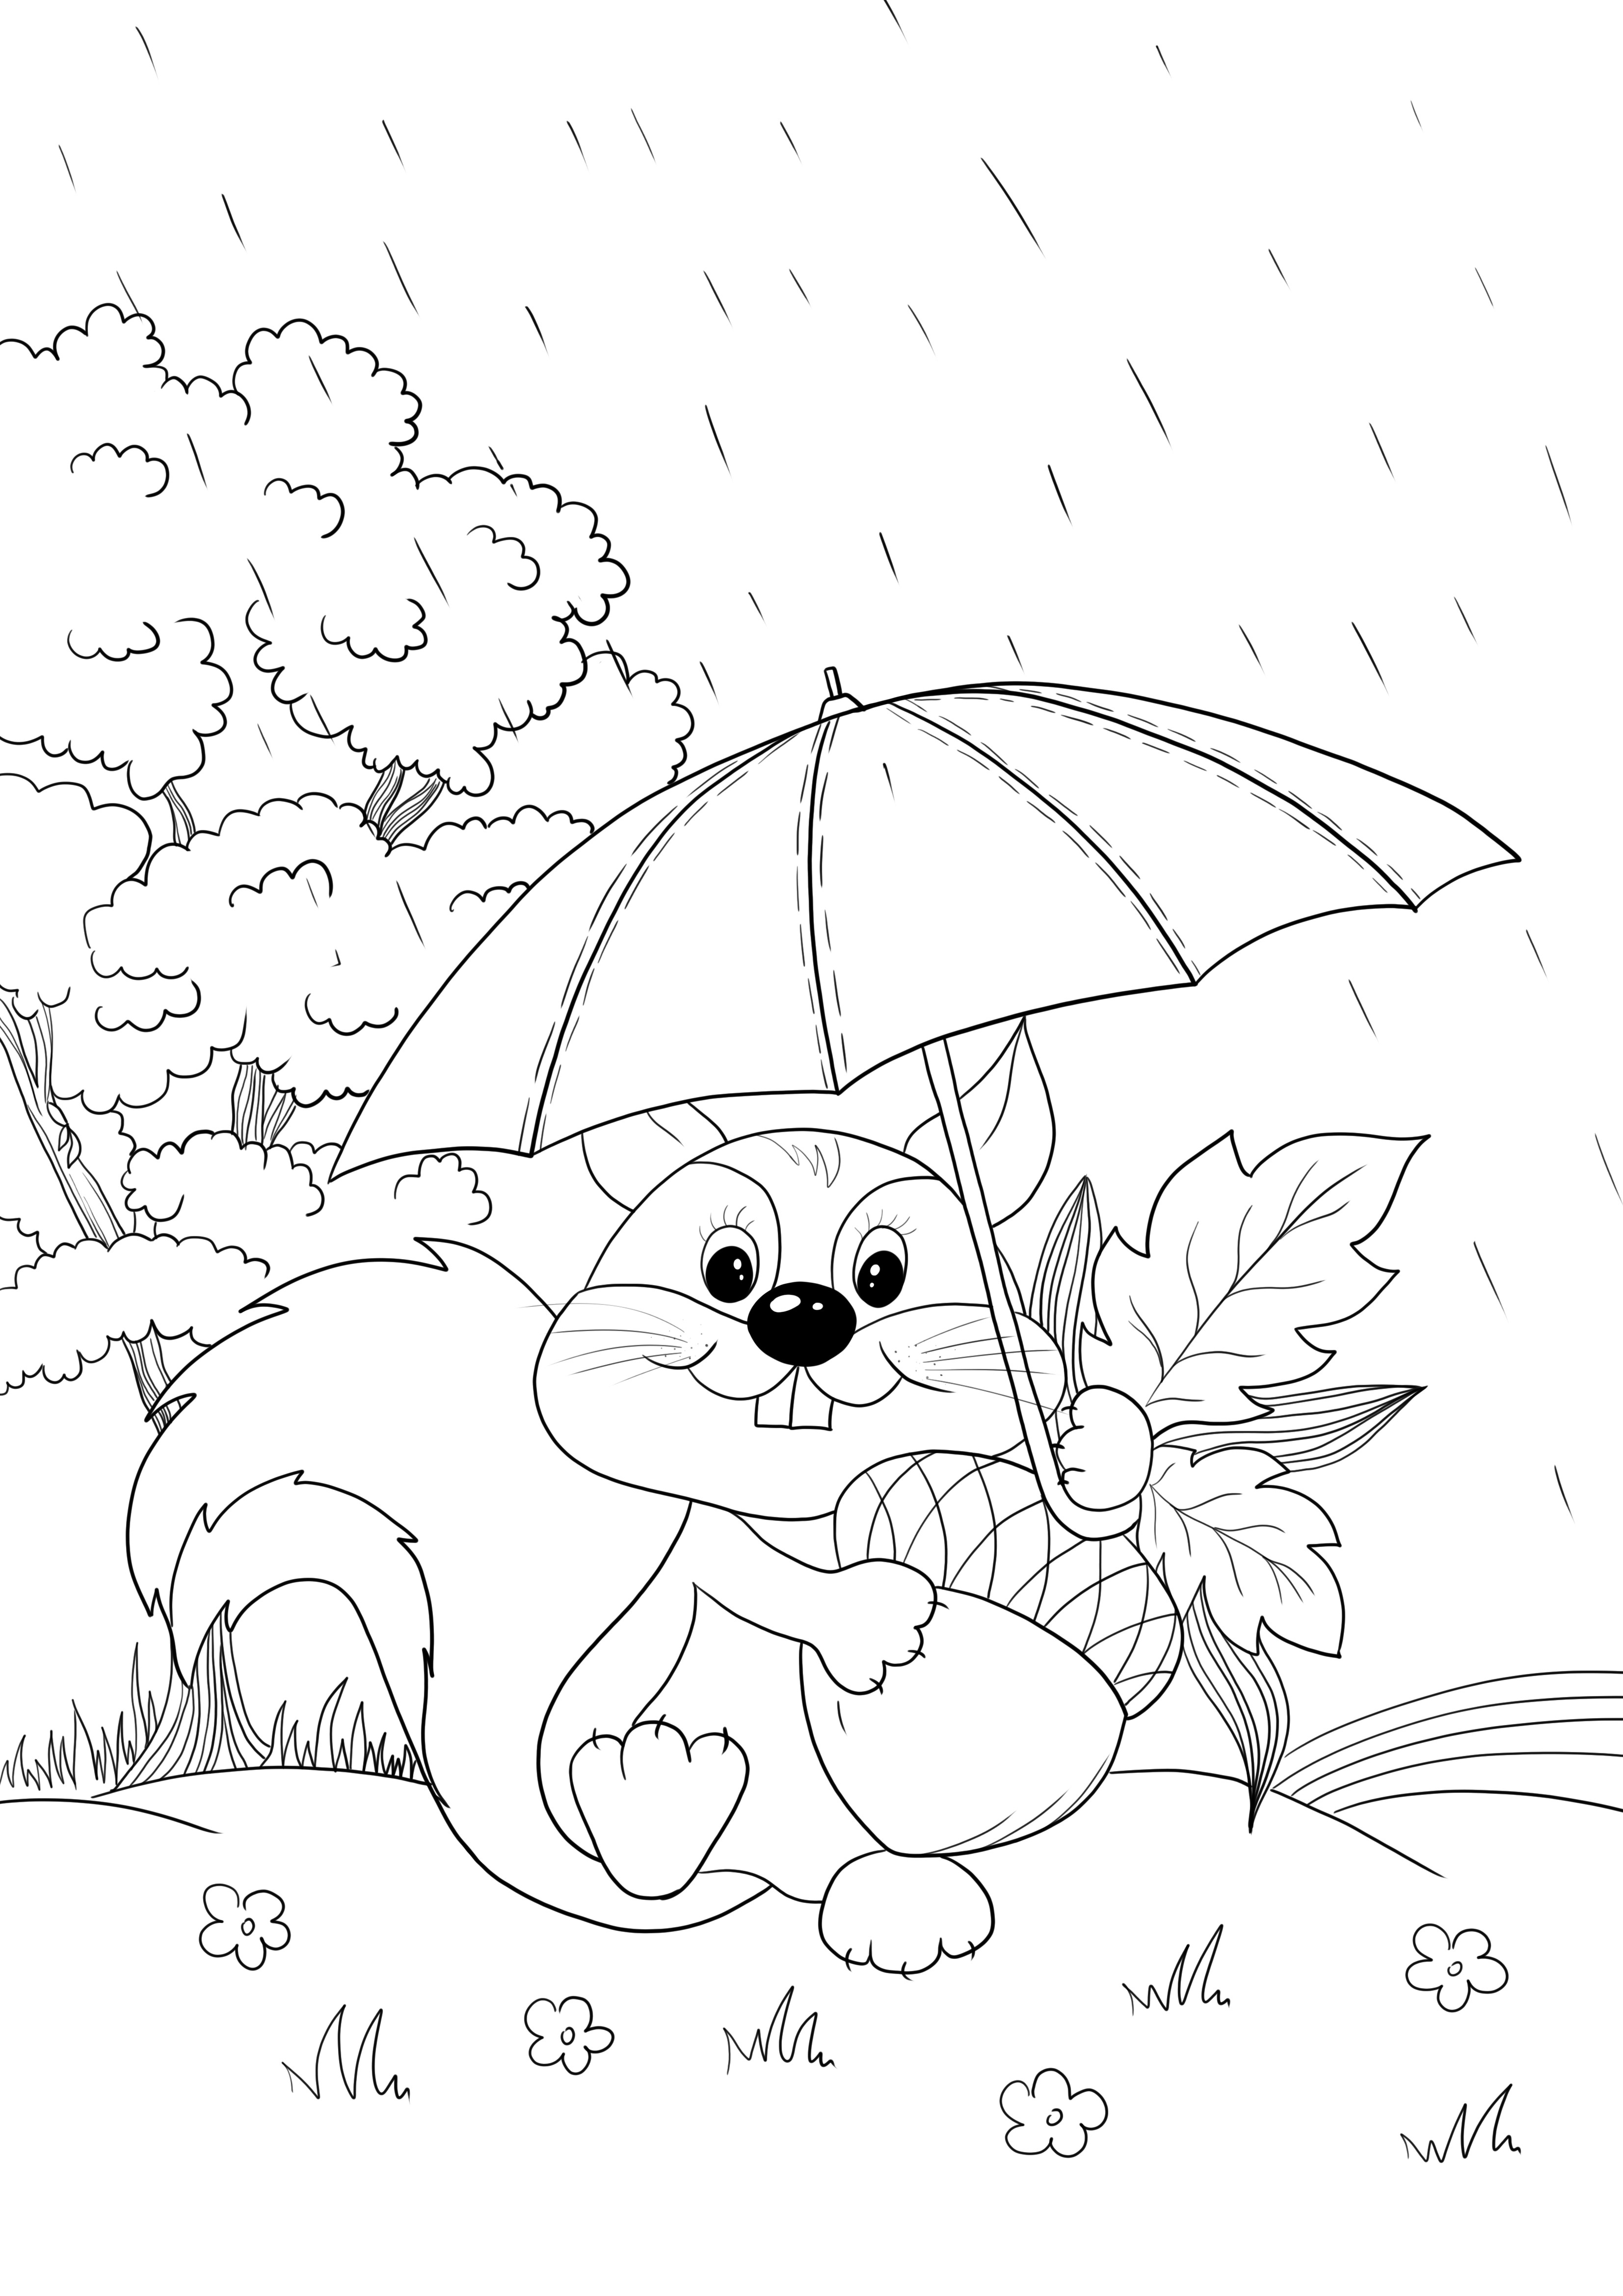 Wiewiórka pod parasolem do bezpłatnego drukowania i pobierania